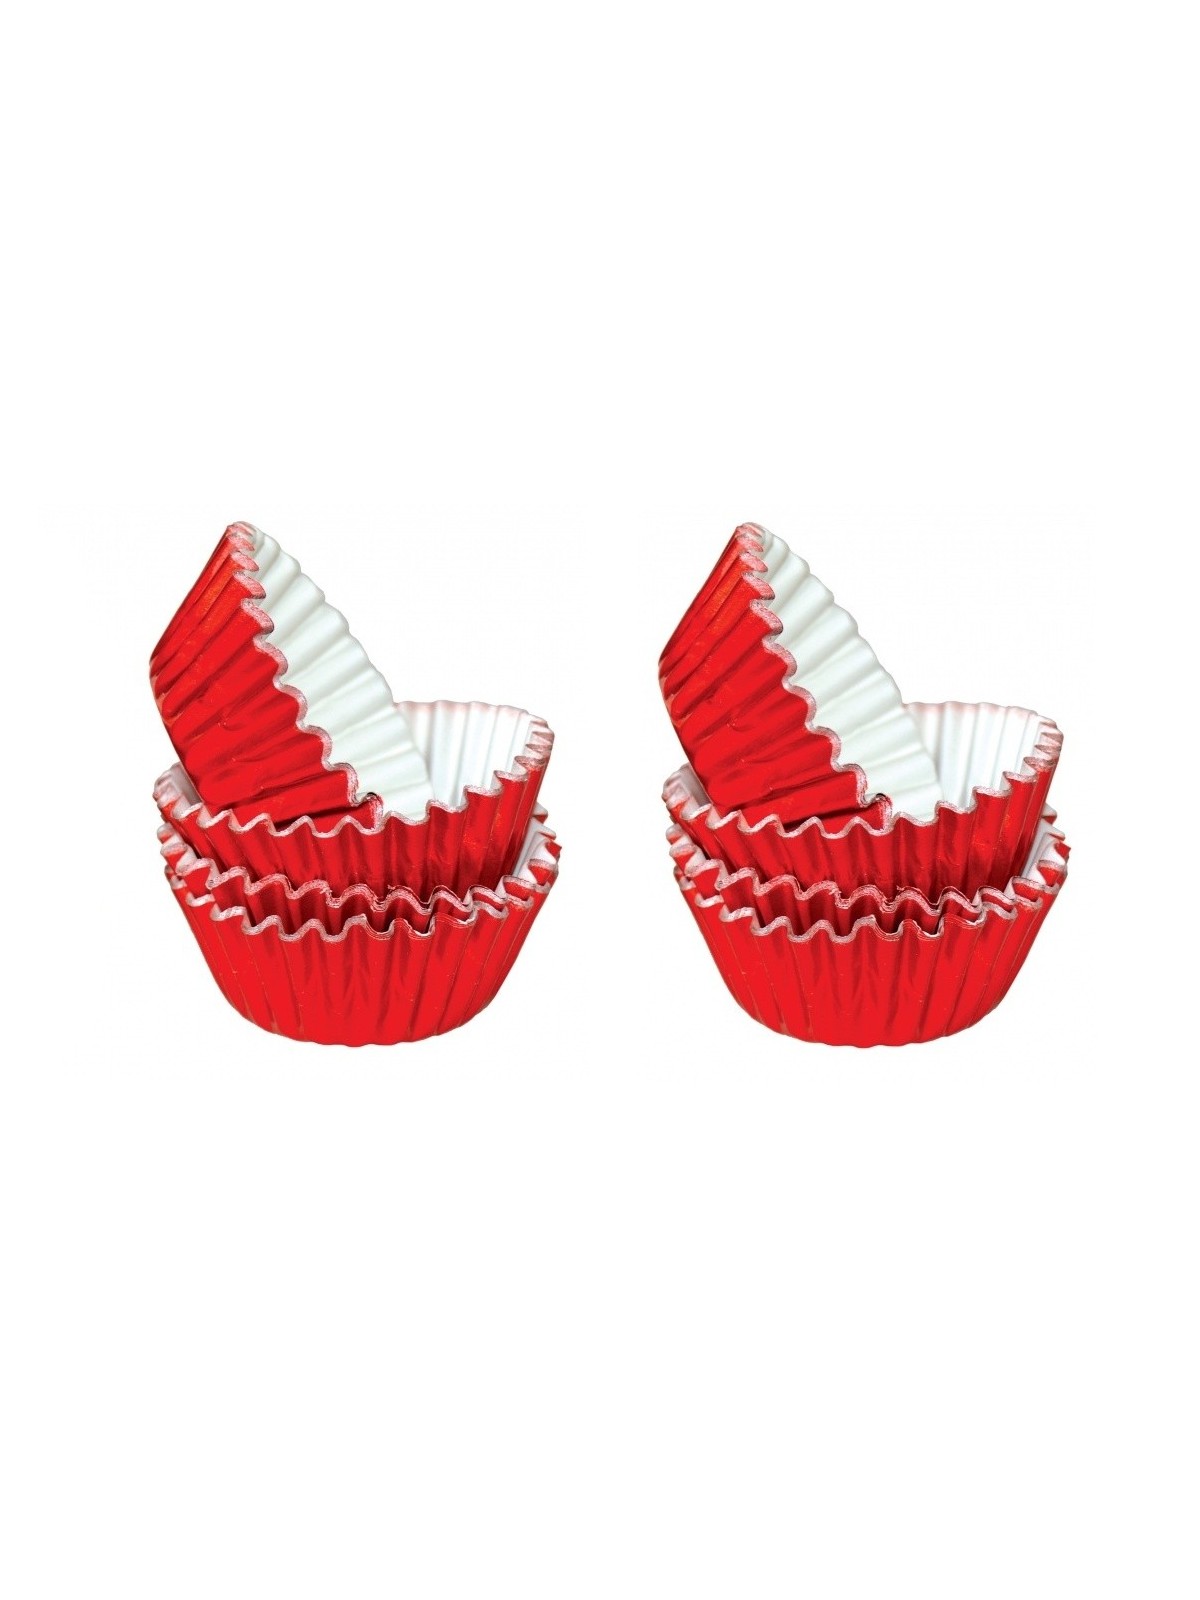 Aluminiumgebäck MINI Cupcakes 2,5 x 1,7 cm - rot - 50 Stk